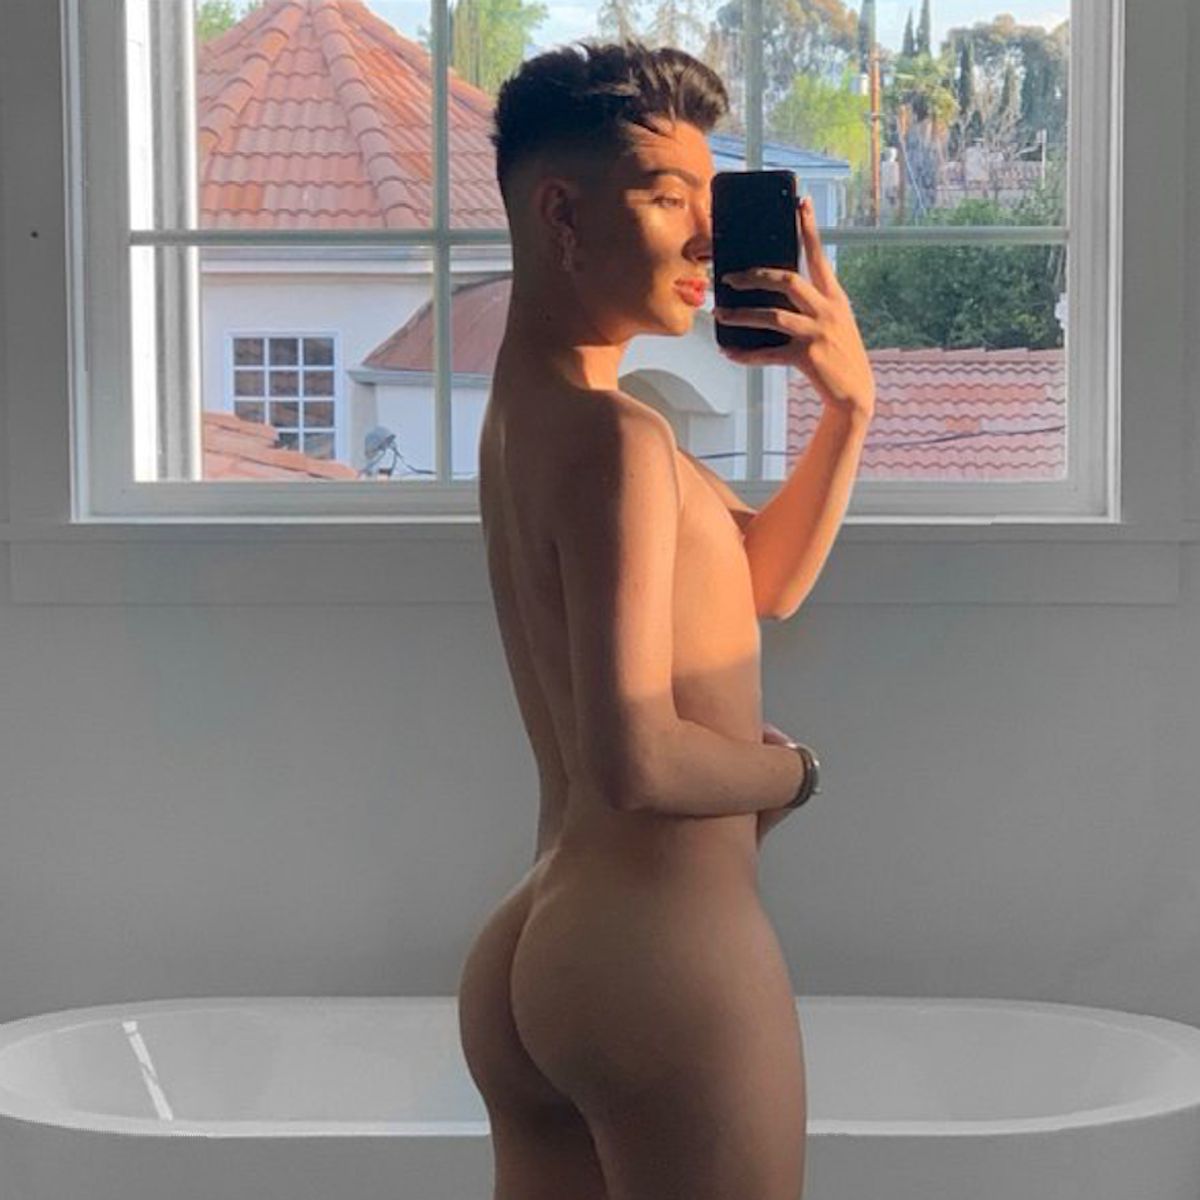 YouTuber James Charles zeigt sich auf Instagram nackt